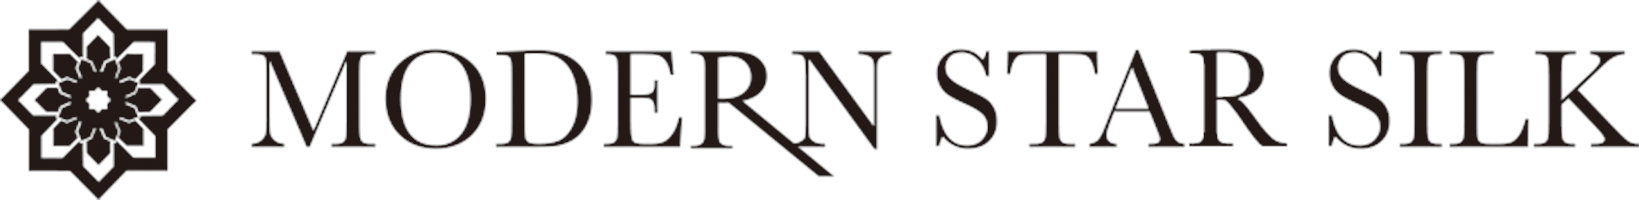 Modern Star Enterprise Co., Ltd. - Nan Jing's logo